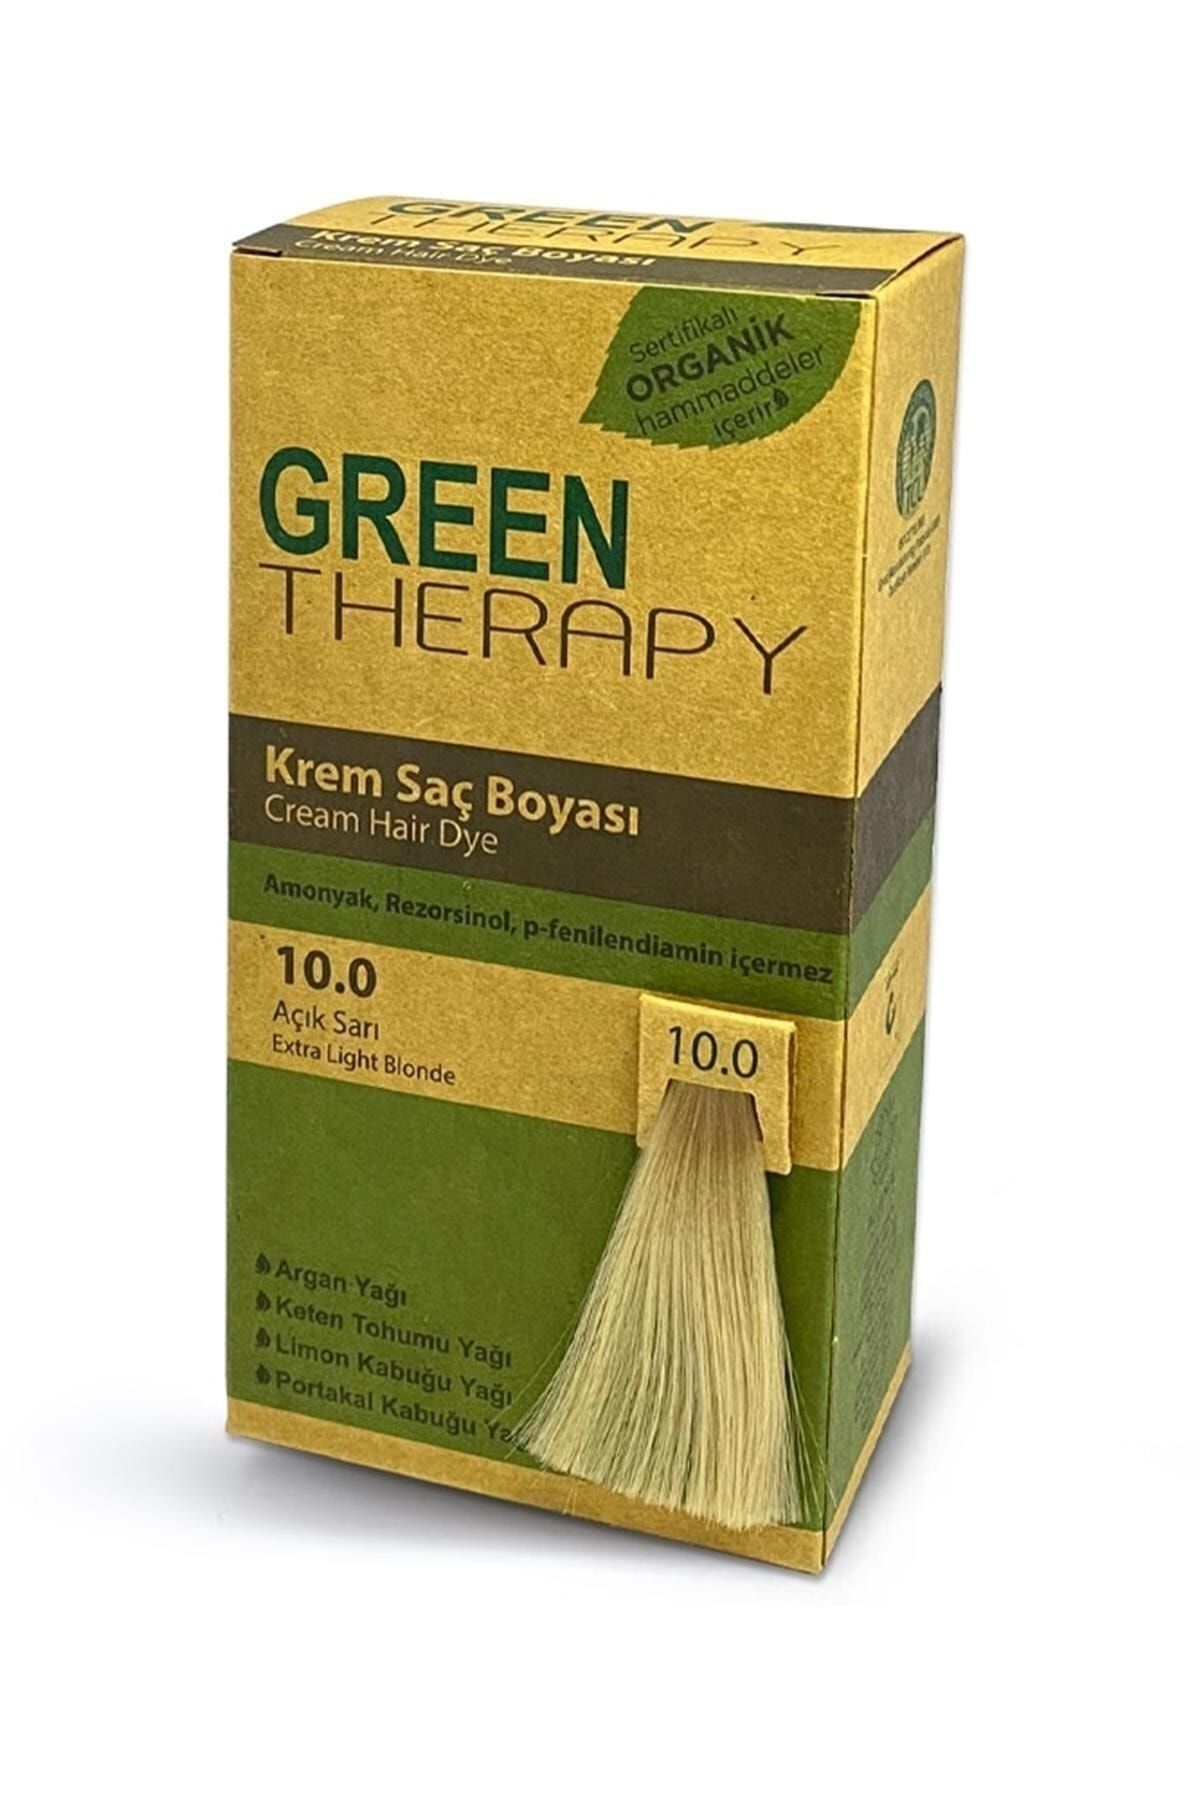 Green Therapy Krem Saç Boyası Argan Yağlı 10.0 Açık Sarı ,,natural1104